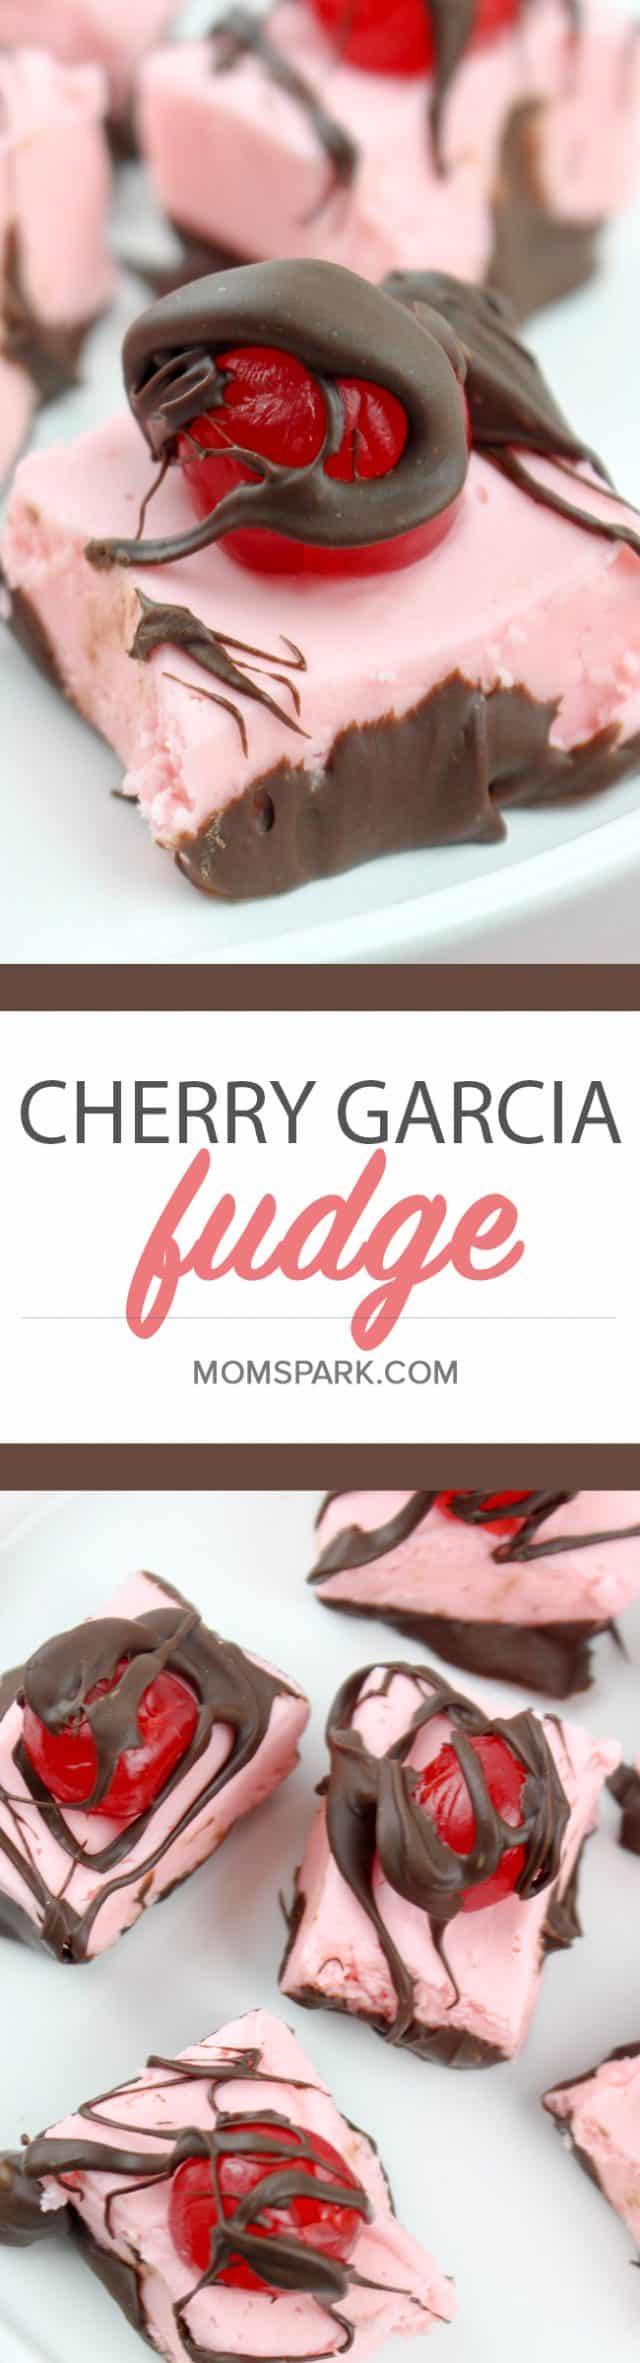 Cherry Garcia Fudge Dessert Recipe